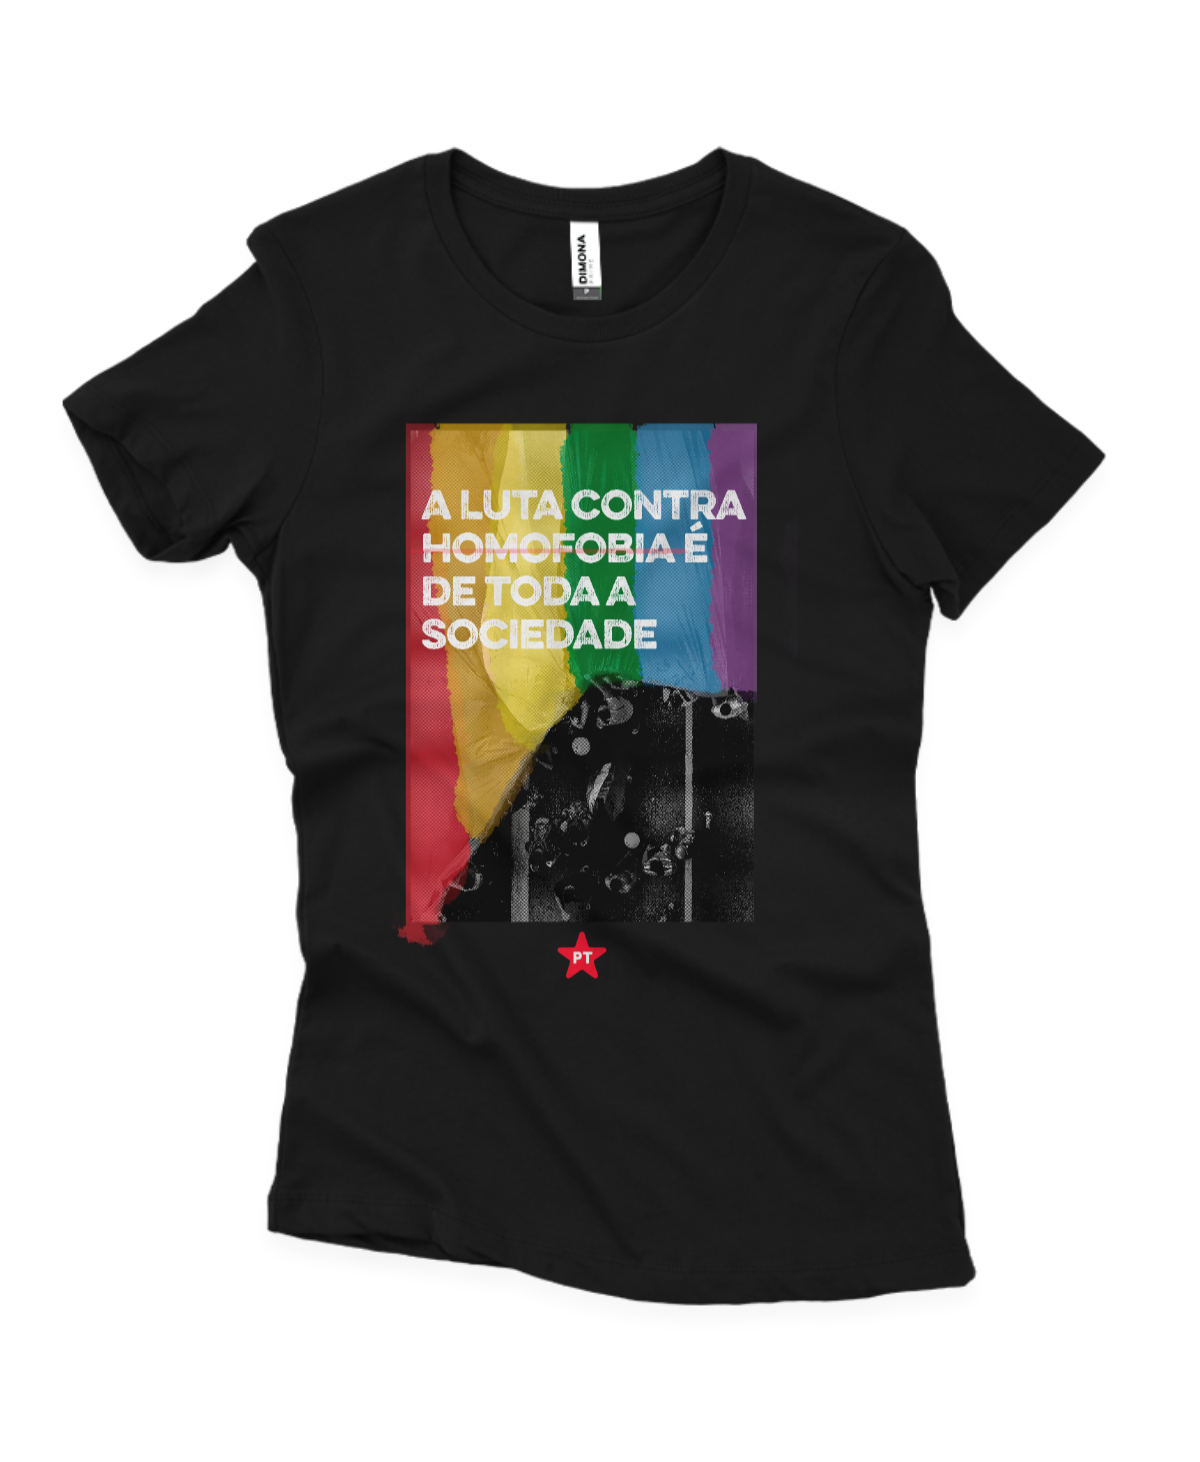 Camiseta Feminina A luta contra a homofobia é de toda a sociedade